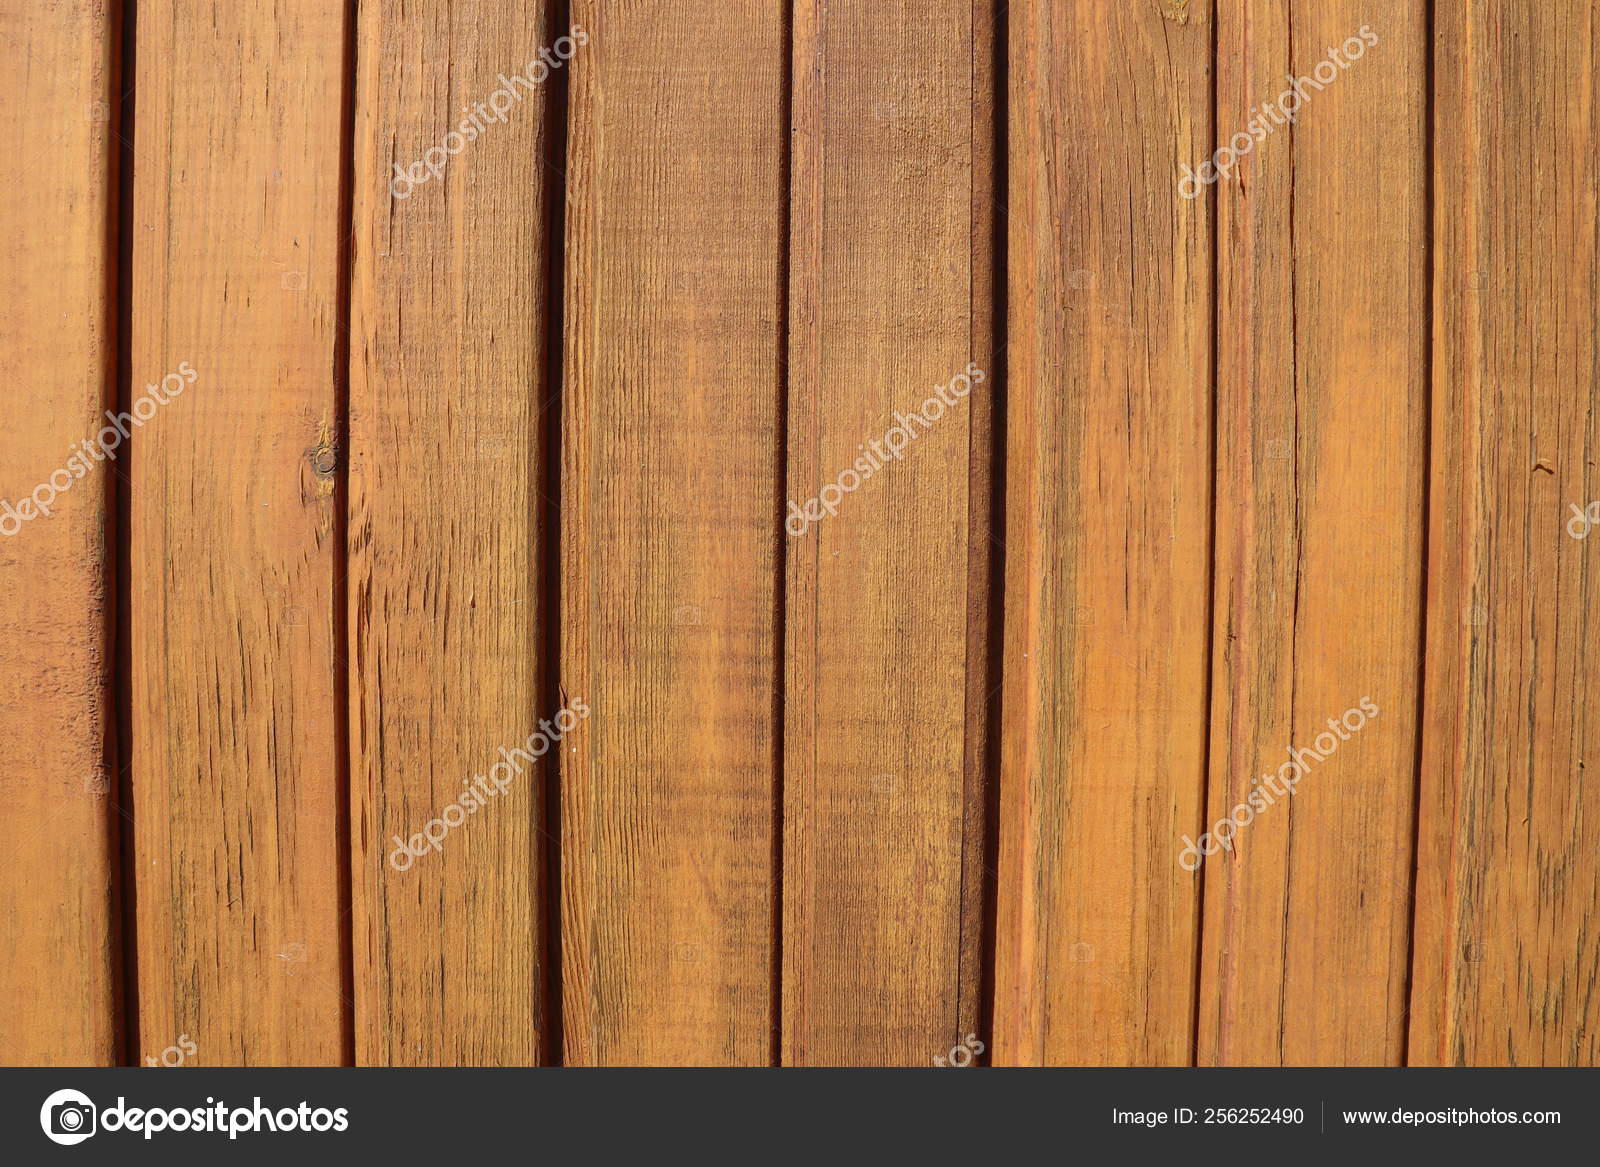 天然棕色木板条线排列图案纹理背景 图库照片 C Allanikitina